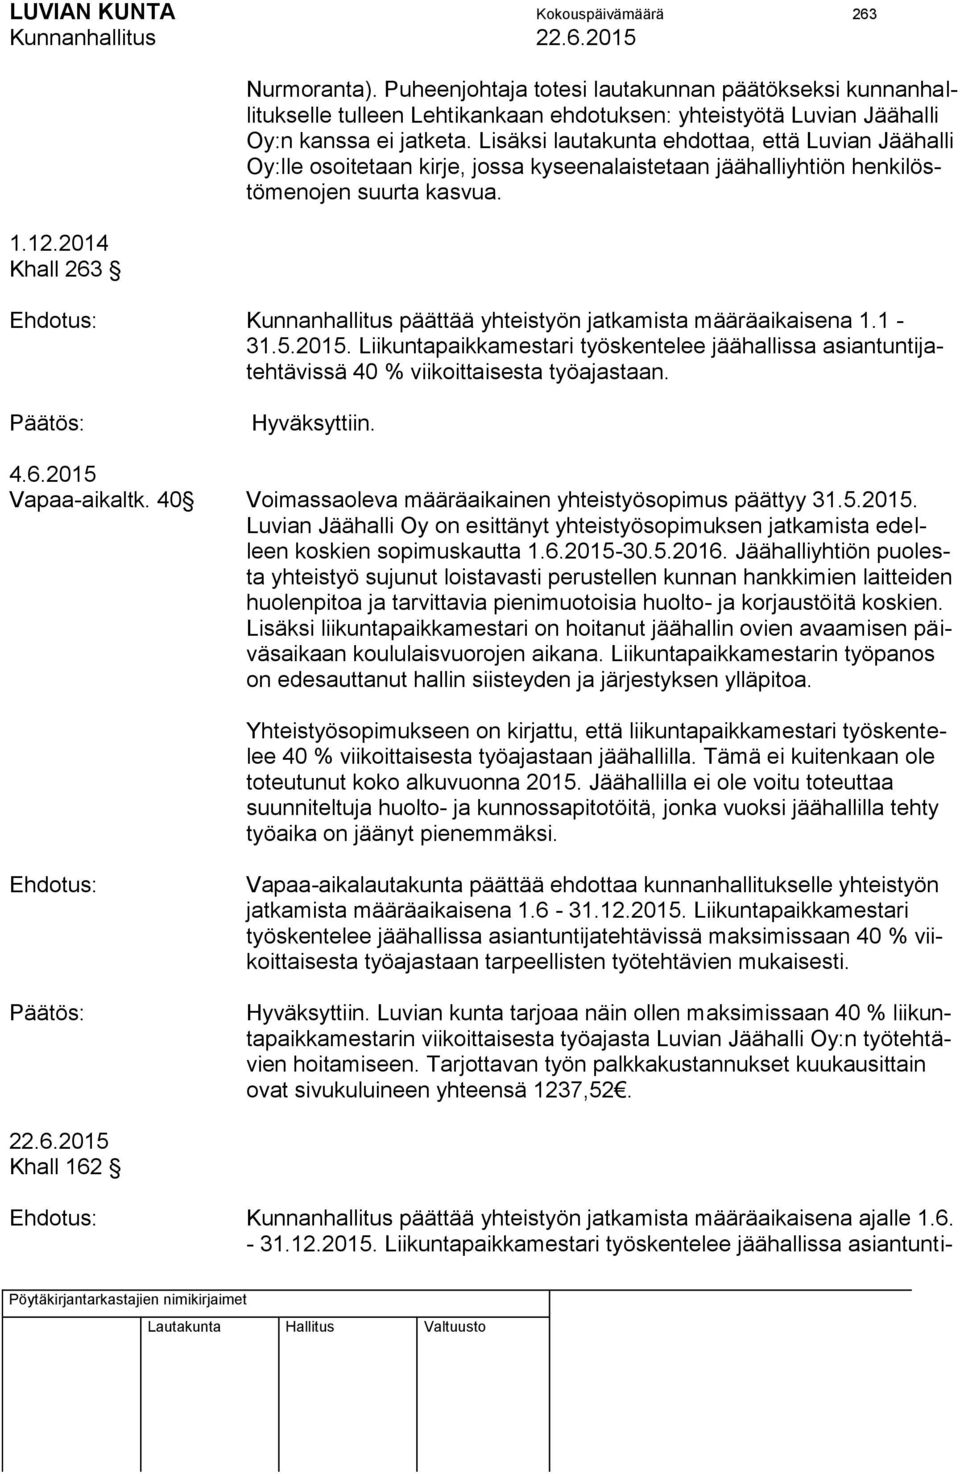 Lisäksi lautakunta ehdottaa, että Luvian Jäähalli Oy:lle osoitetaan kirje, jossa kyseenalaistetaan jäähalliyhtiön henkilöstömenojen suurta kasvua.